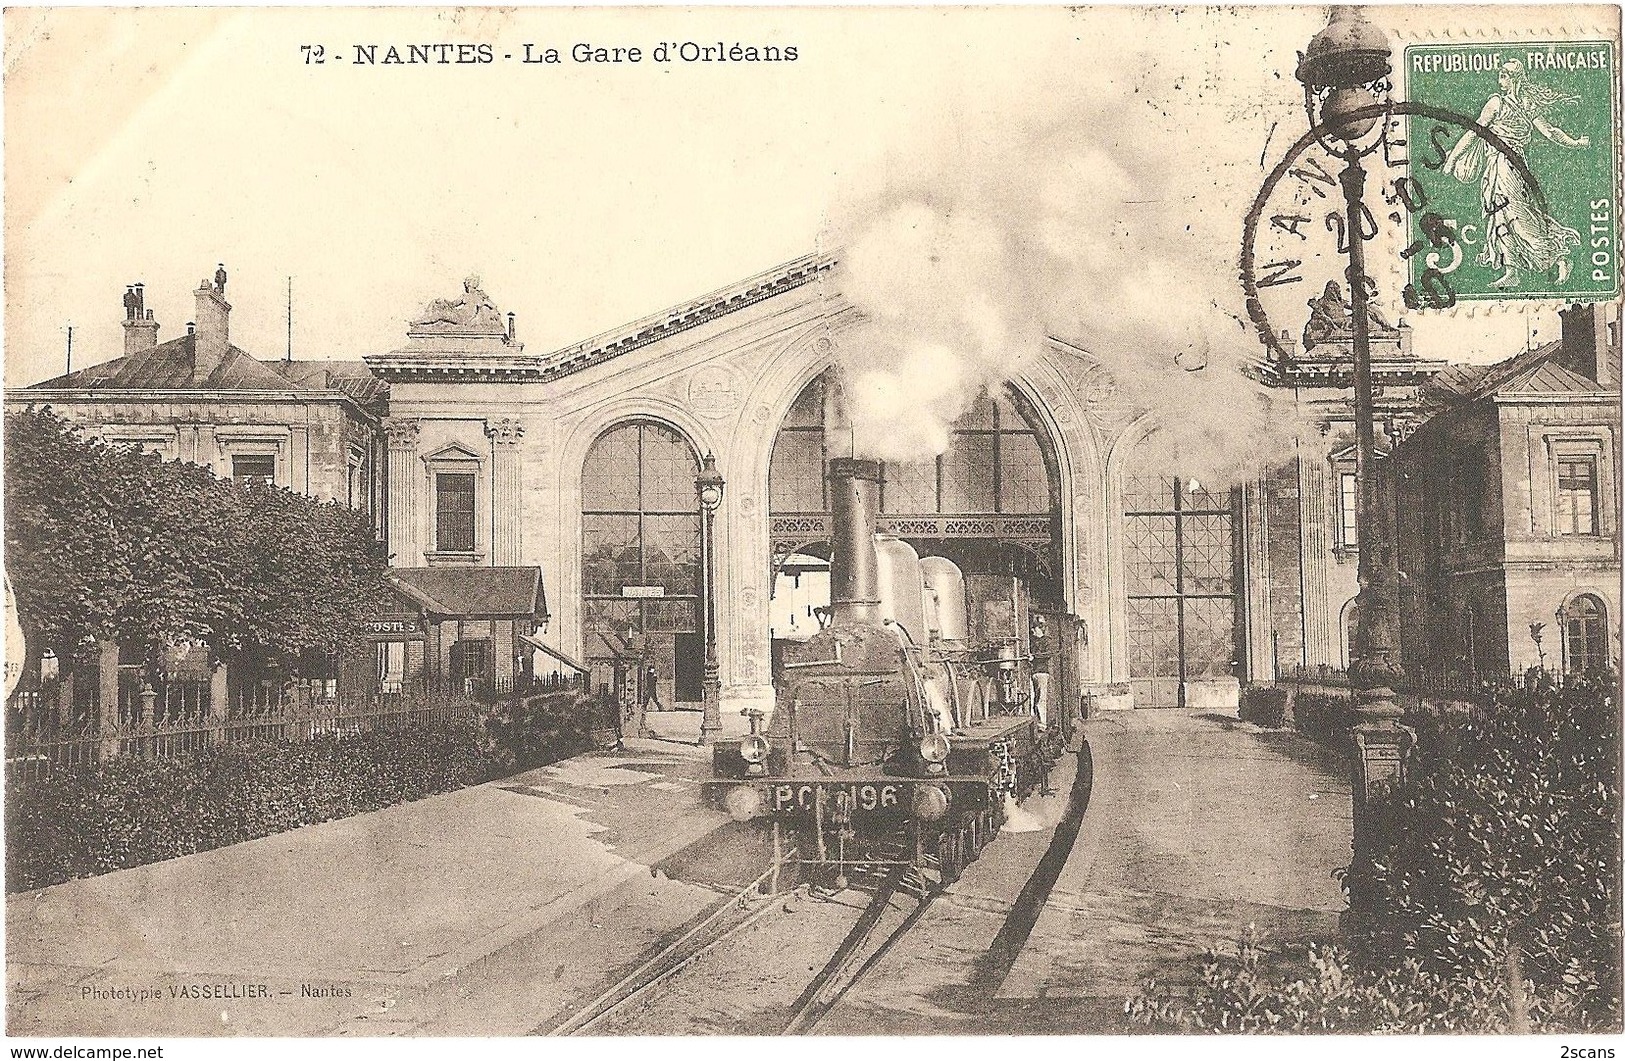 Dépt 44 - NANTES - La Gare D'Orléans - (train, Locomotive P.C 196) - Phototypie VASSELLIER - Nantes, N° 72 - Nantes